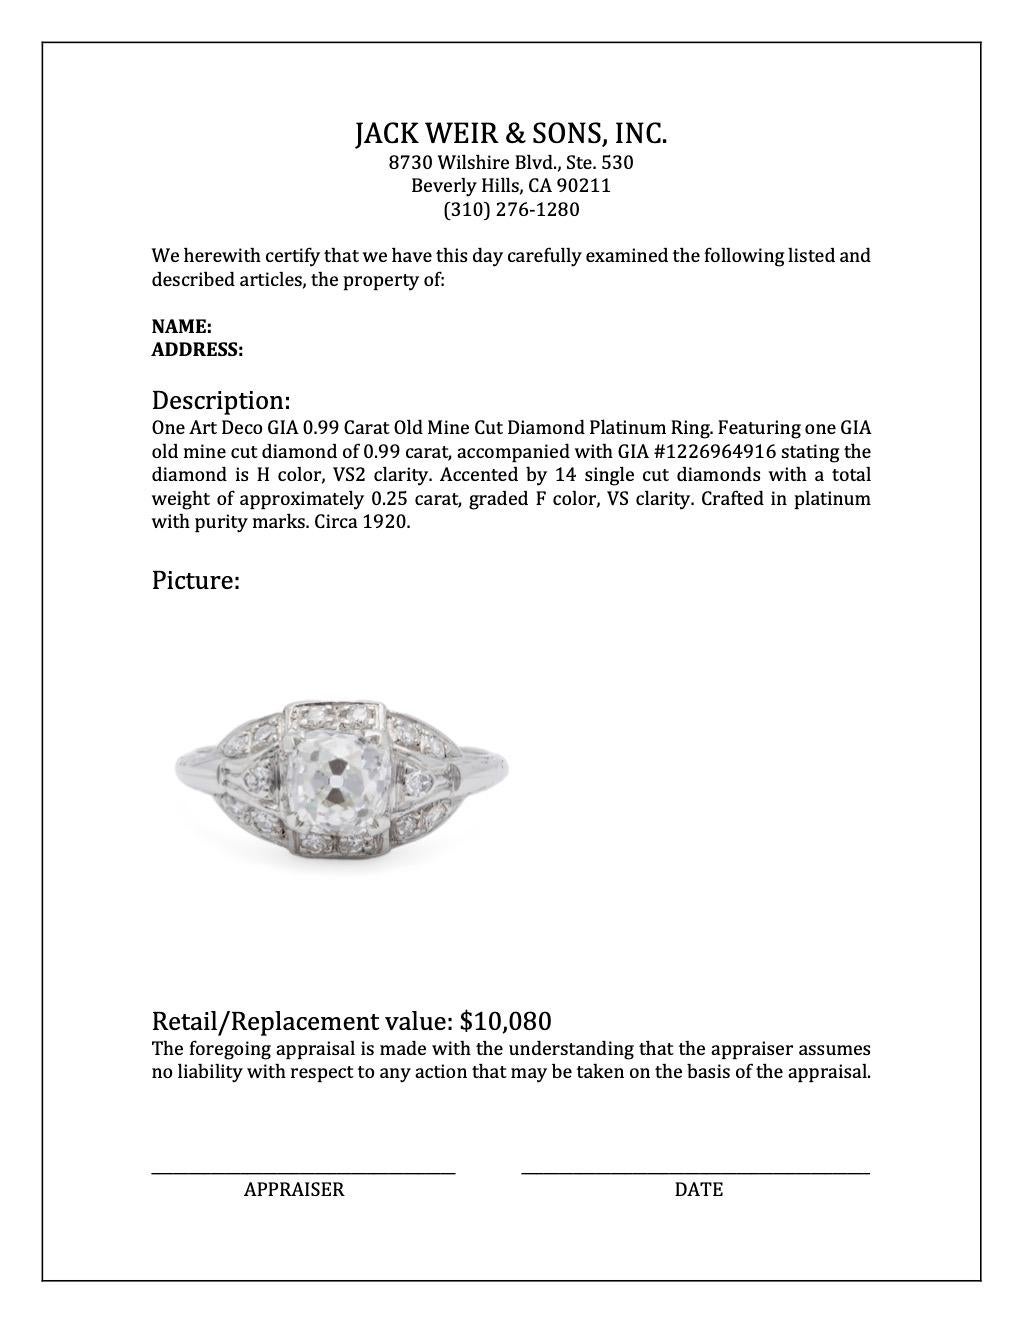 Art Deco GIA 0.99 Carat Old Mine Cut Diamond Platinum Ring 4